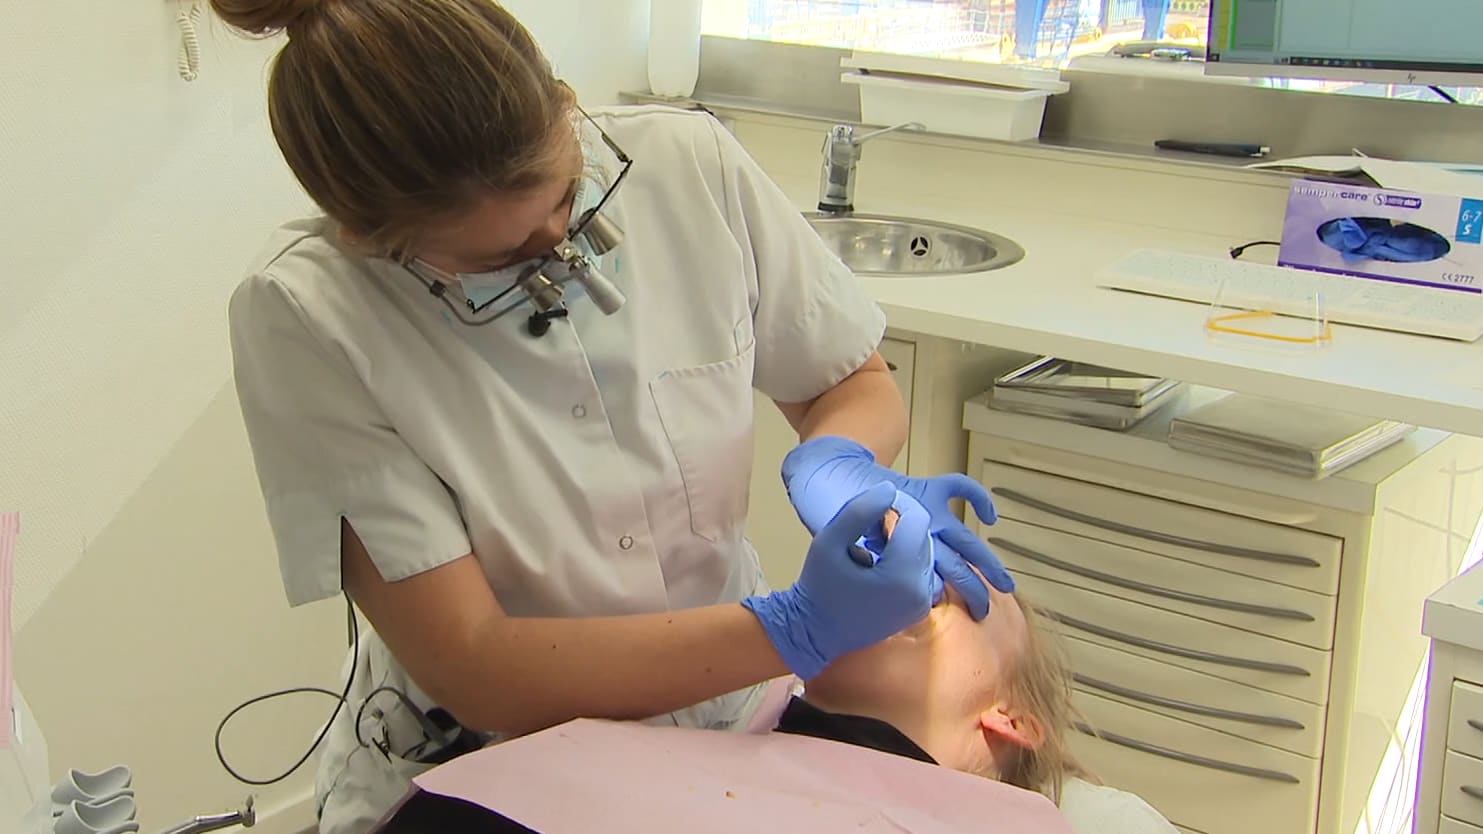 Rotterdamse tandartsen bieden gratis behandeling aan: 'Op een gegeven moment durf je niet meer'